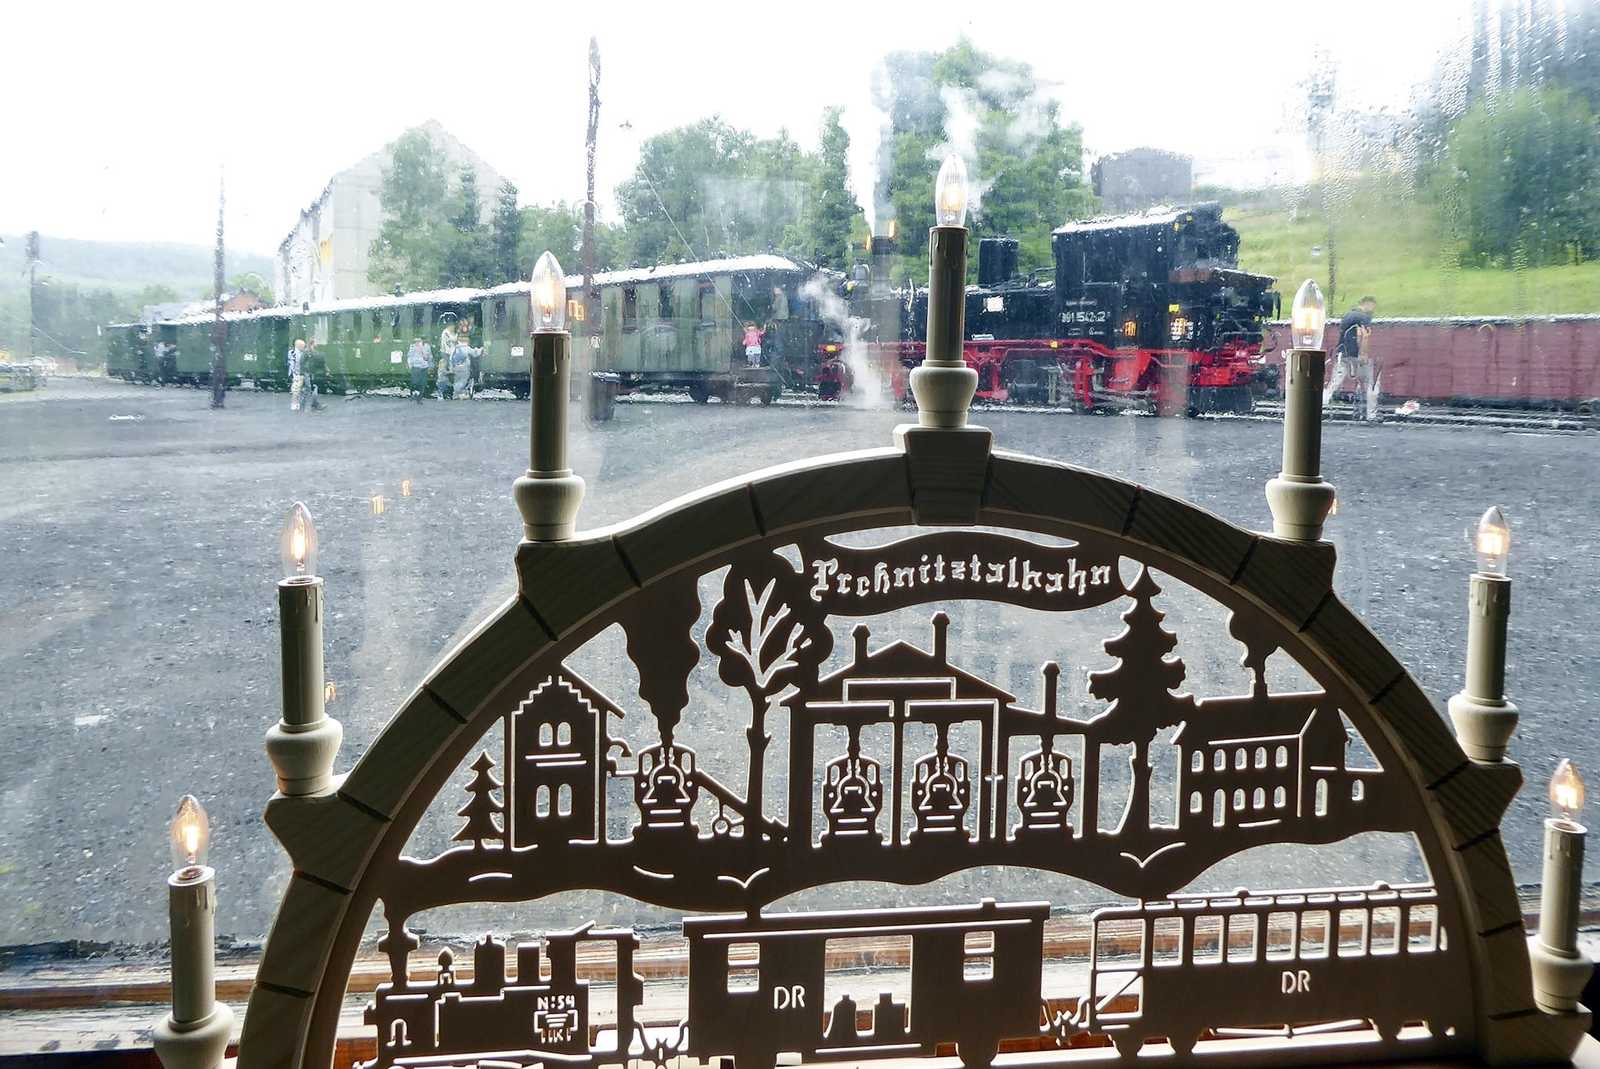 Bei der Preßnitztalbahn in Jöhstadt ist keinesfalls das ganze Jahr über Weihnachten – aber die im Ort angefertigten Schwibbögen mit Motiven der Museumsbahn können hier auch im Sommer gekauft werden.